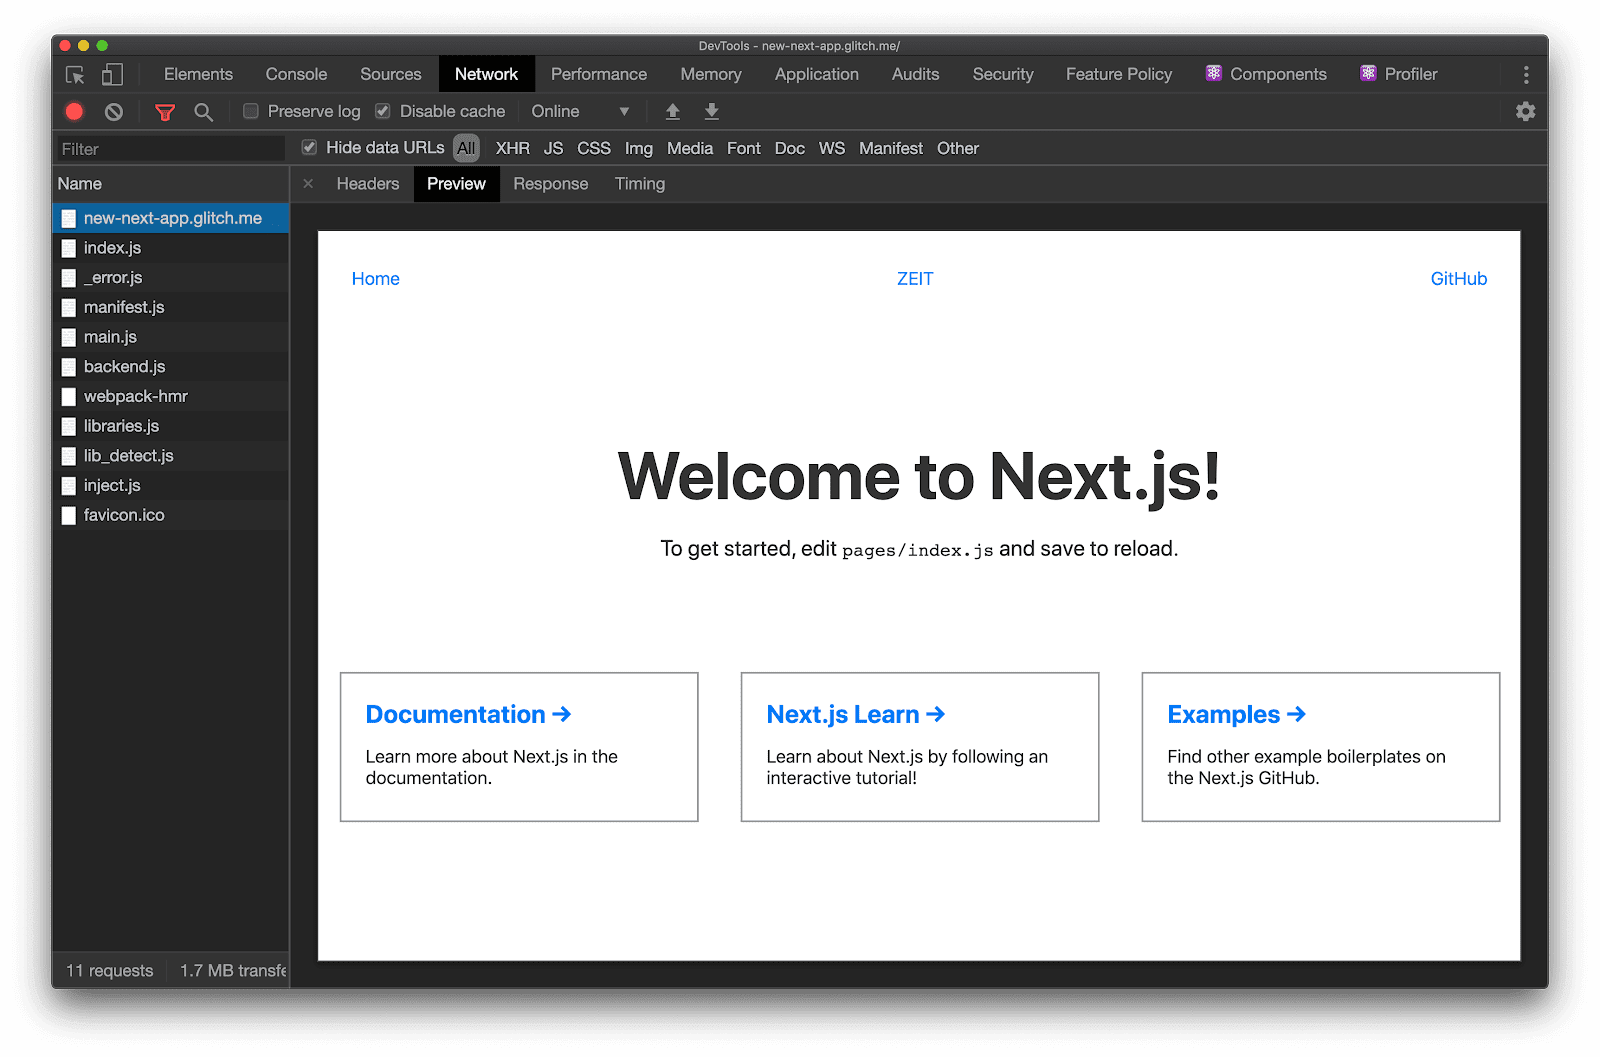 La pestaña Vista previa del panel Network muestra que Next.js muestra HTML visualmente completo cuando se solicita una página.